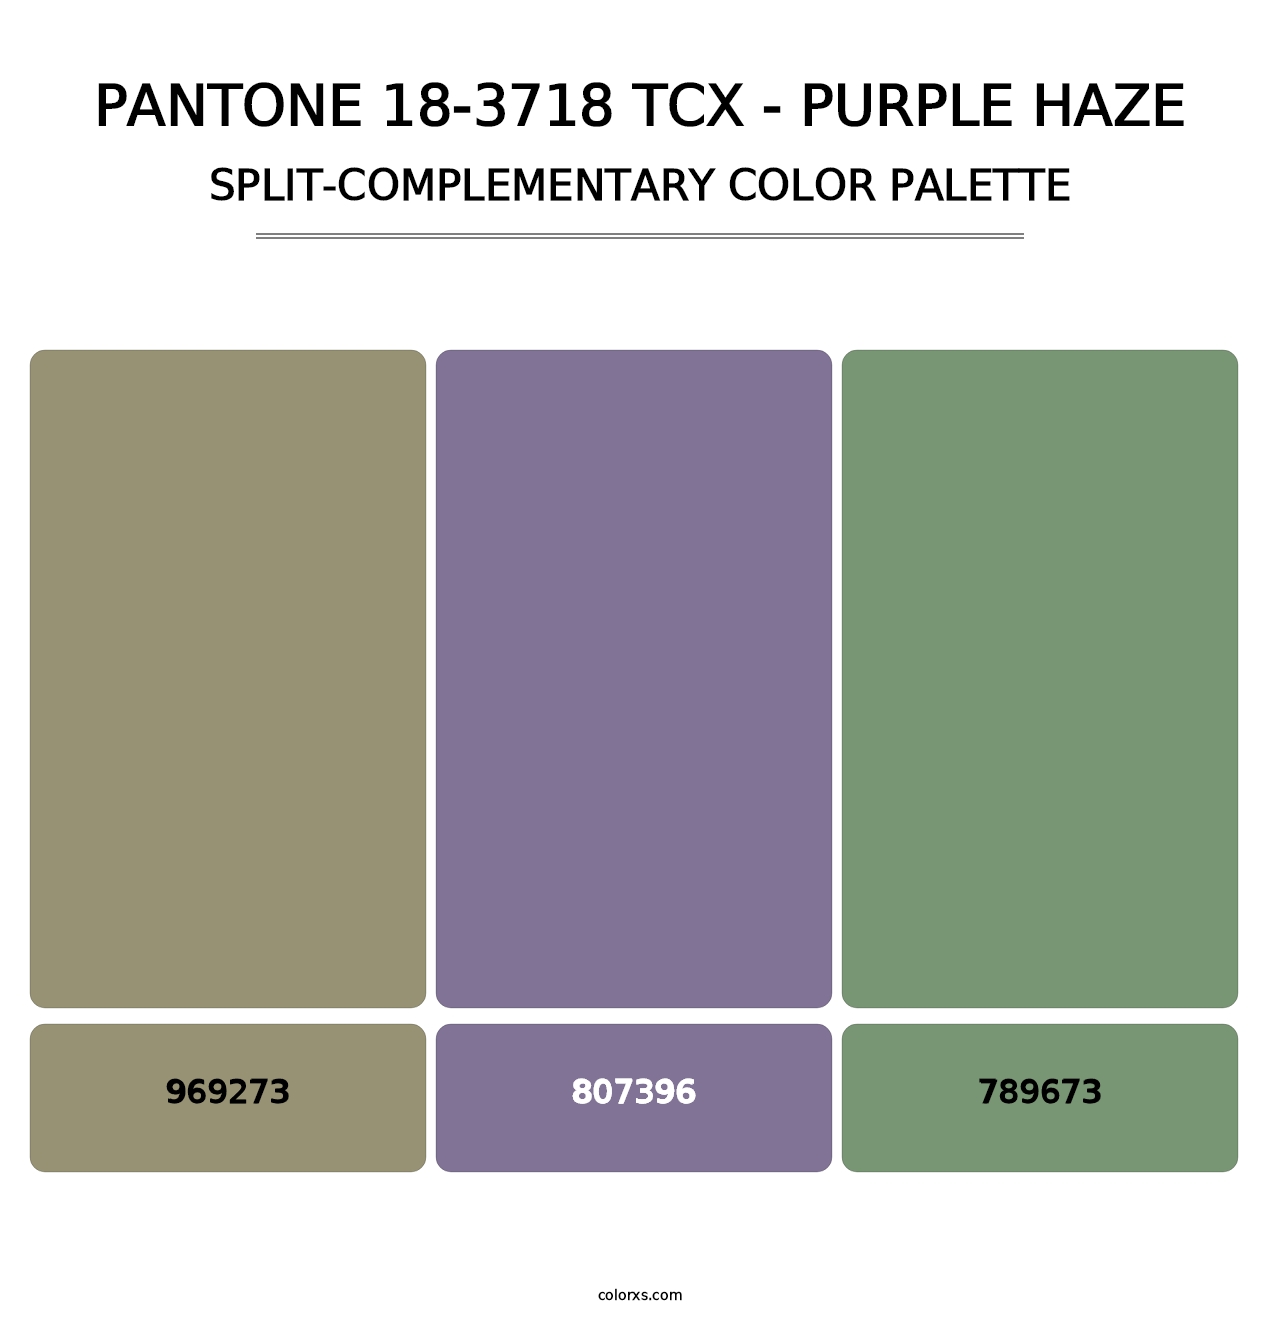 PANTONE 18-3718 TCX - Purple Haze - Split-Complementary Color Palette